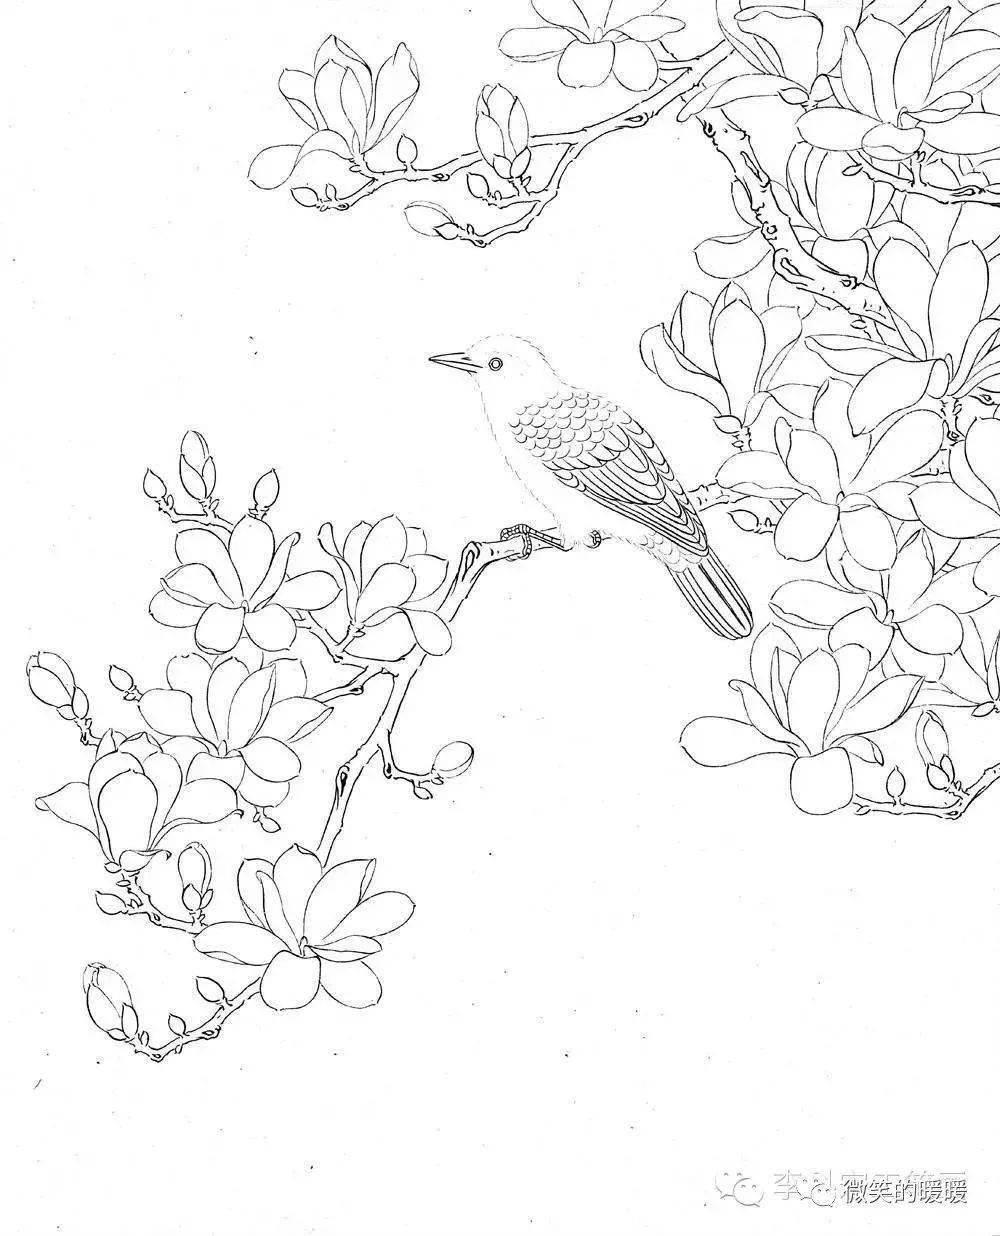 工笔画白描花鸟需要的收藏